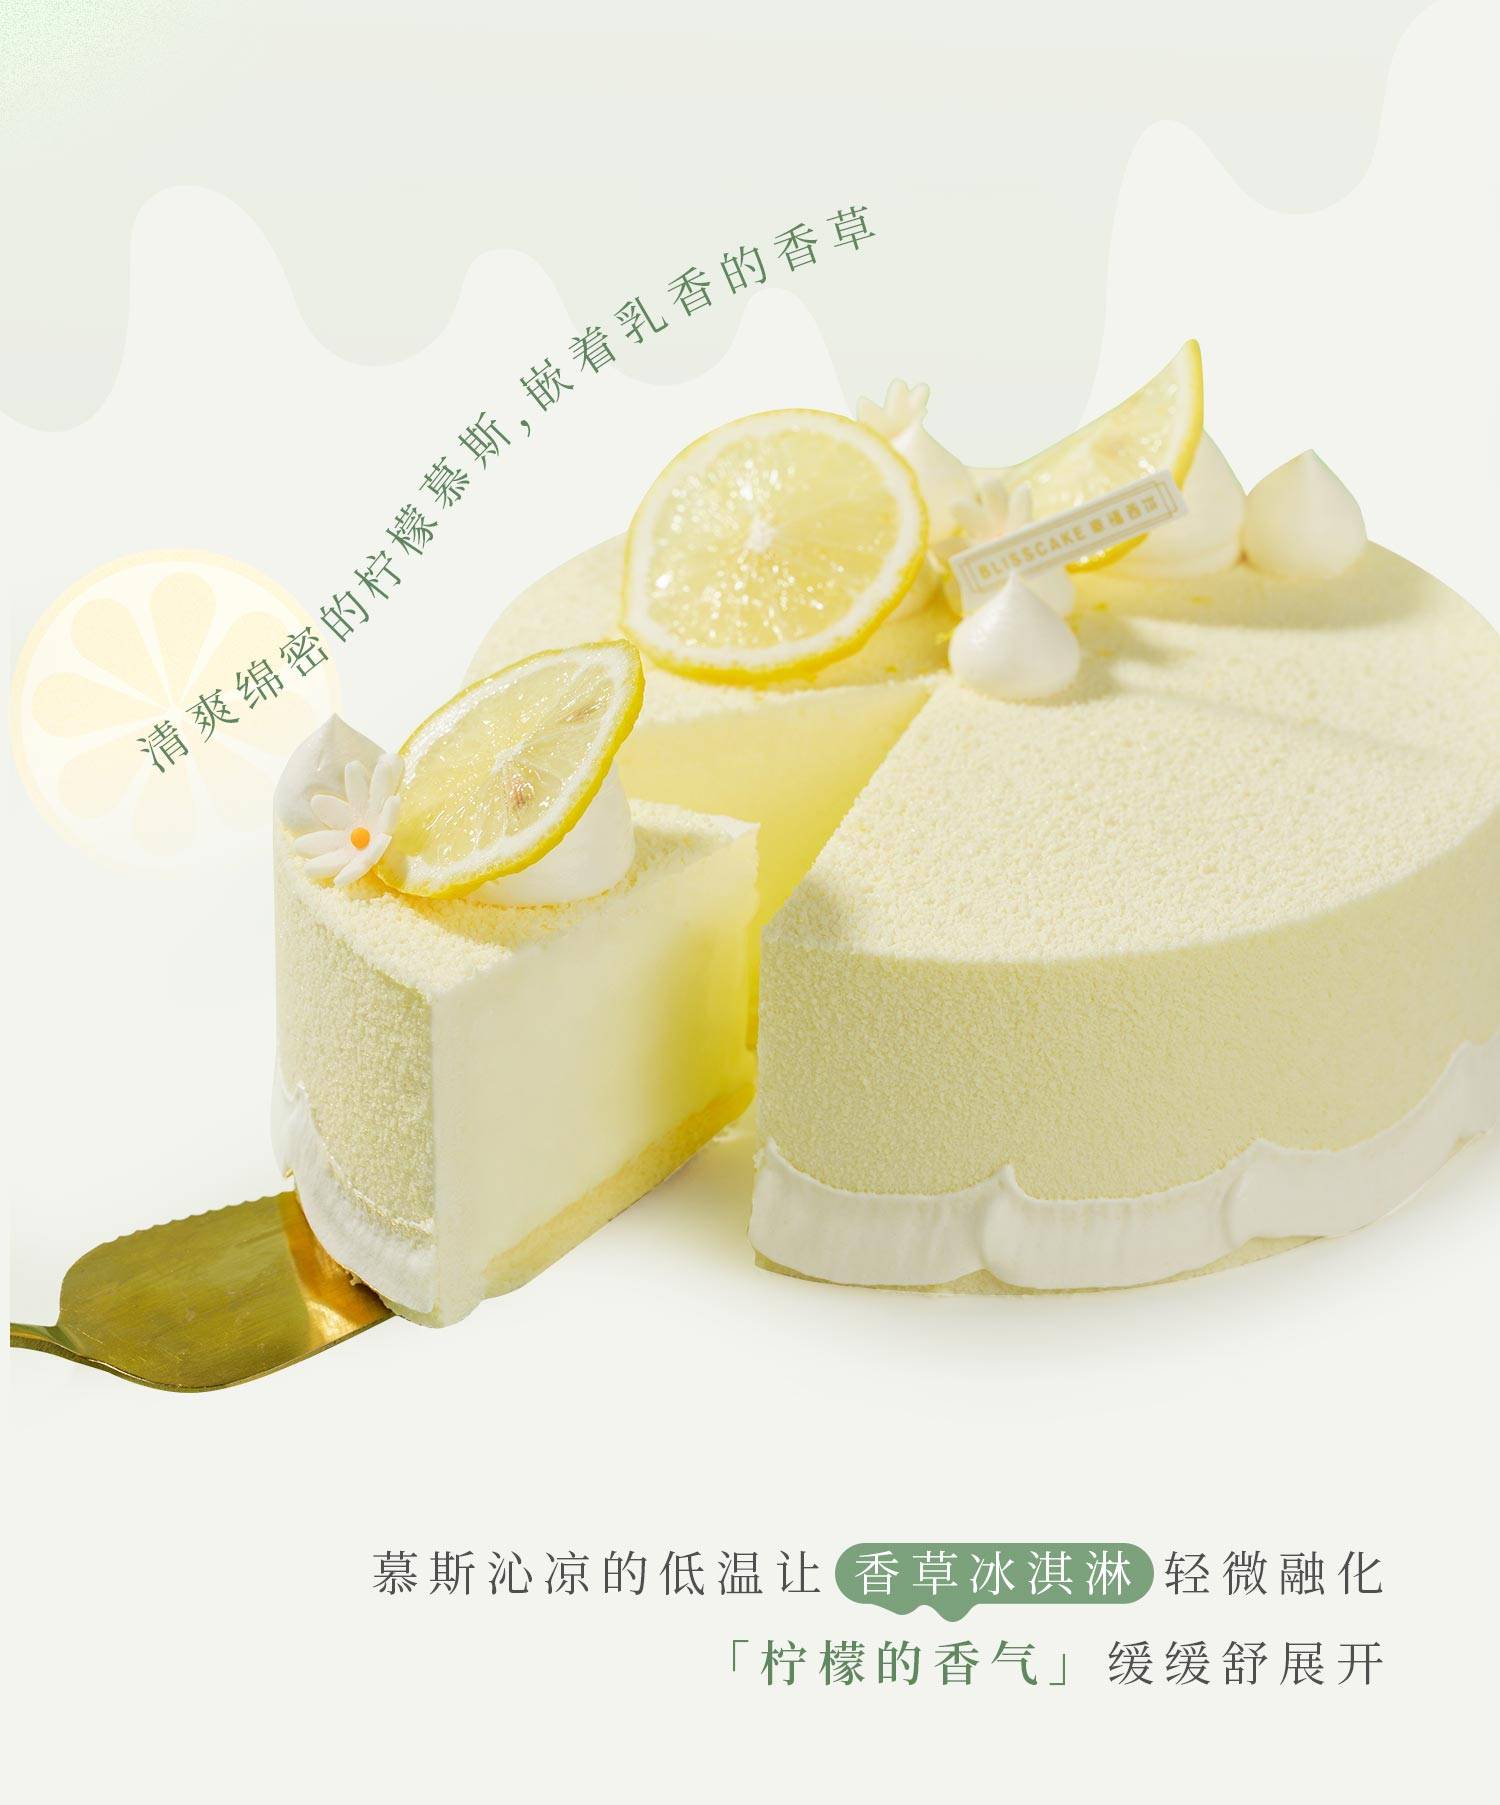 香草冰淇淋慕斯_幸福西饼蛋糕预定_加盟幸福西饼_深圳幸福西饼官方网站